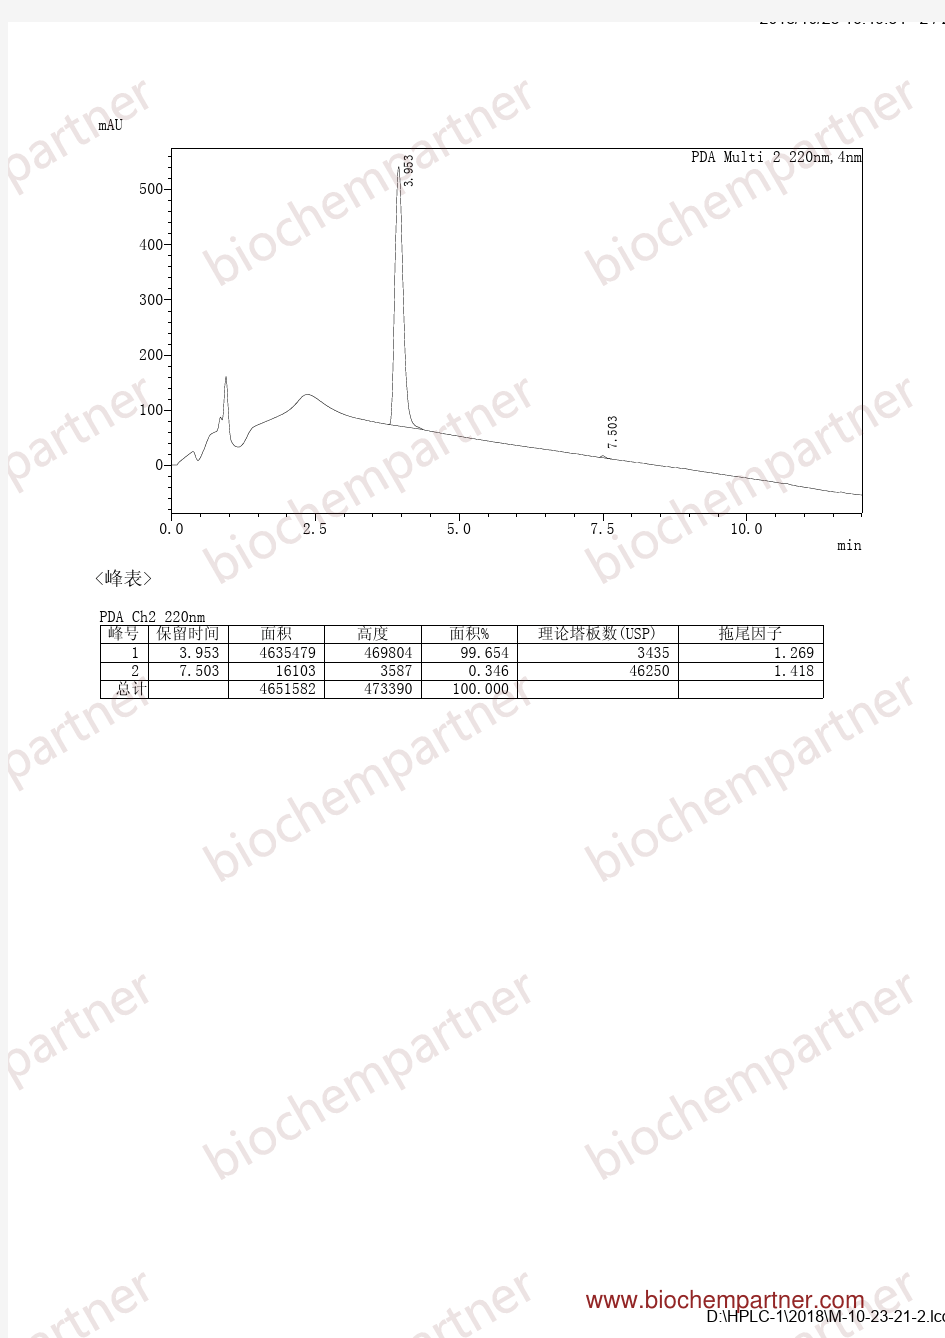 甲磺酸乐伐替尼(857890-39-2,Lenvatinib Mesylate)-HPLC-Biochempartner